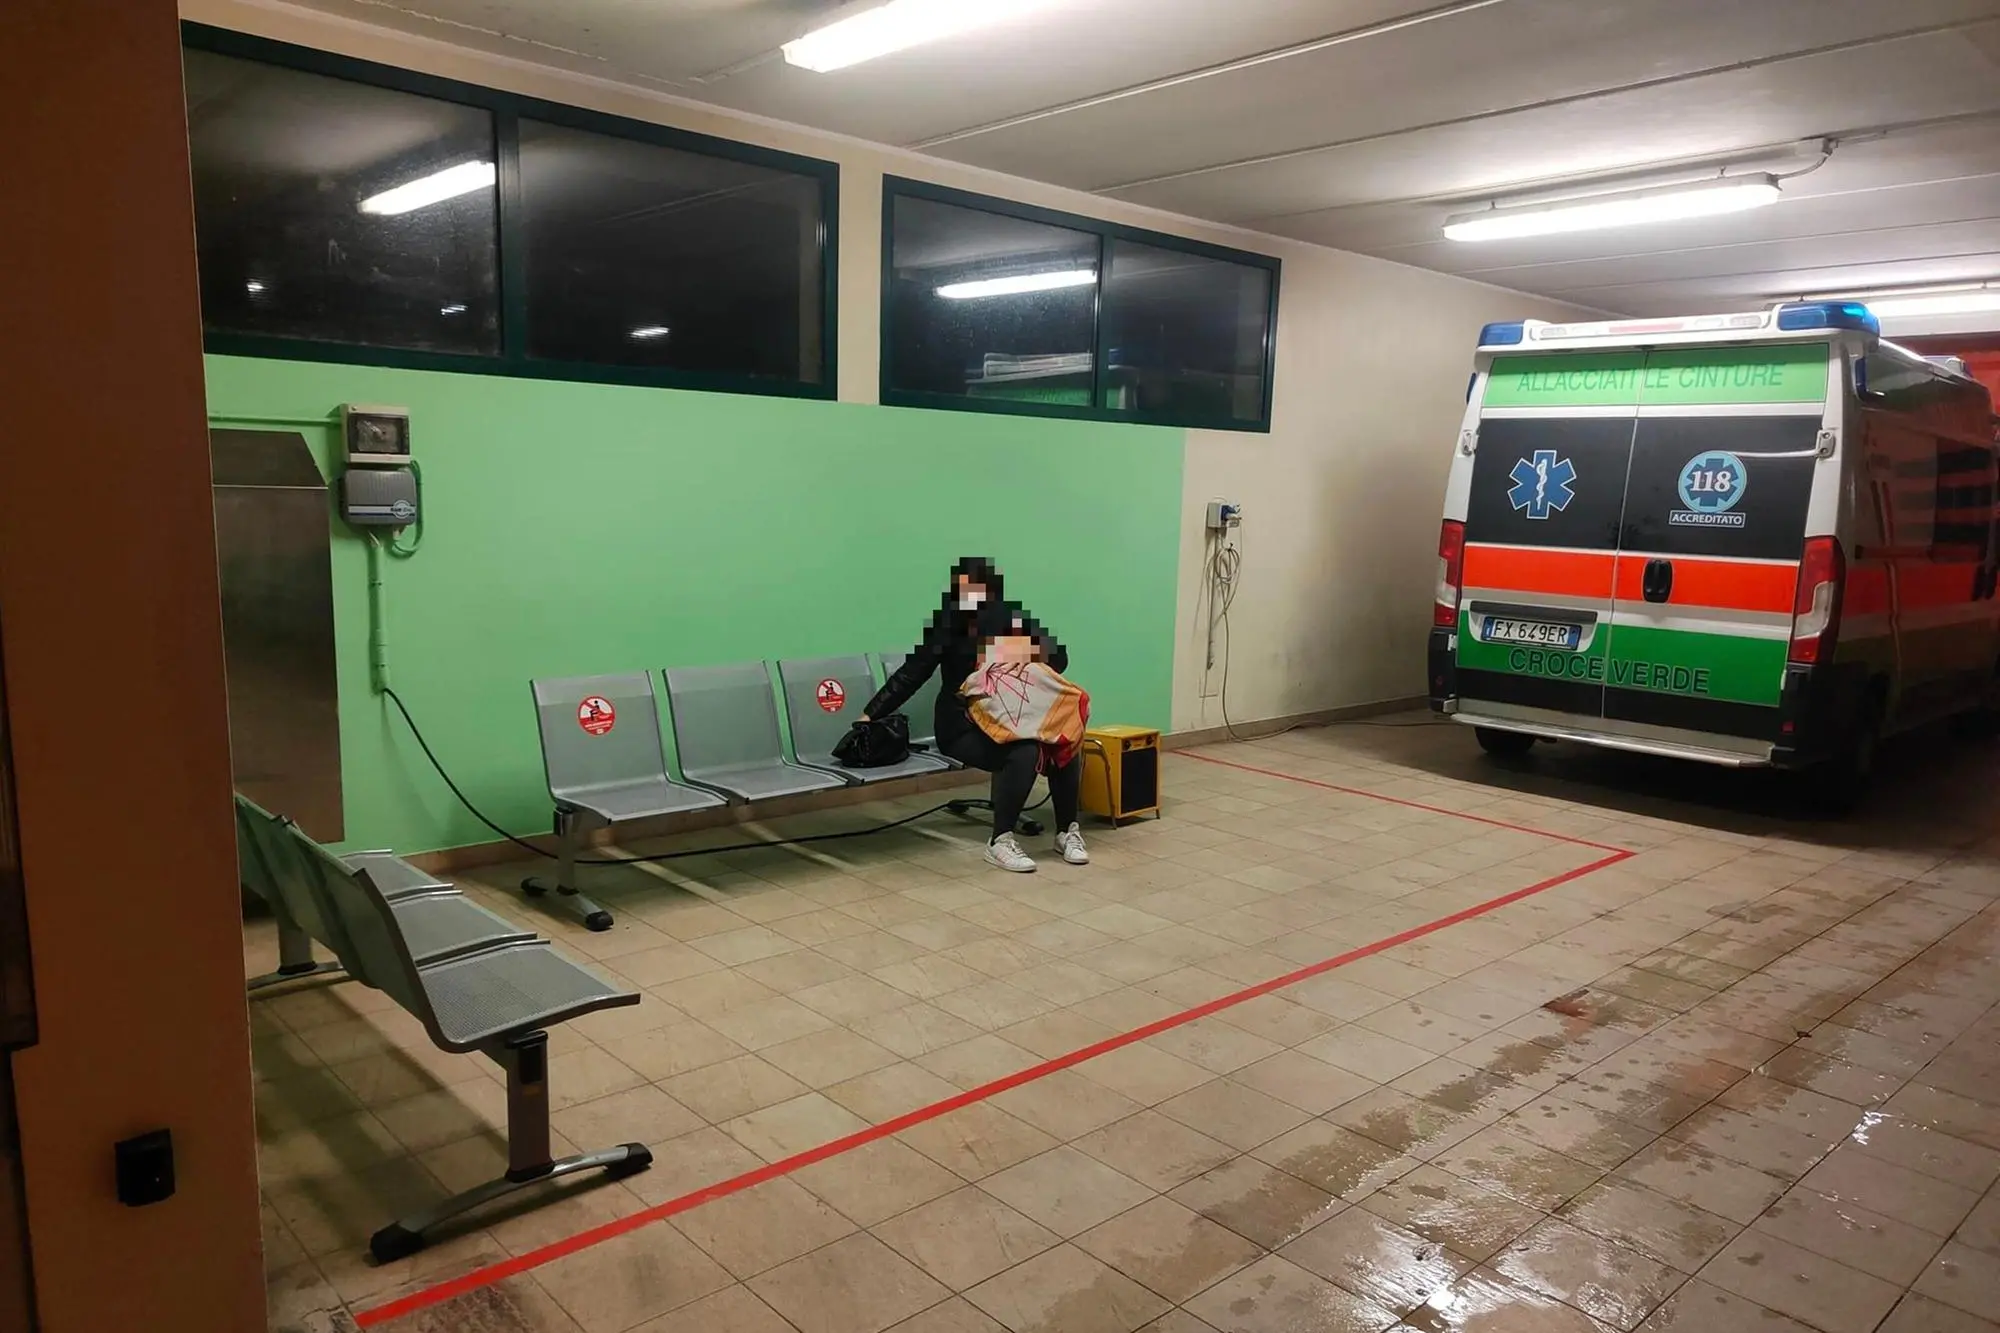 Una delle foto diffuse sui social mostra la donna seduta col figlioletto nel parcheggio delle ambulanze (foto Facebook)